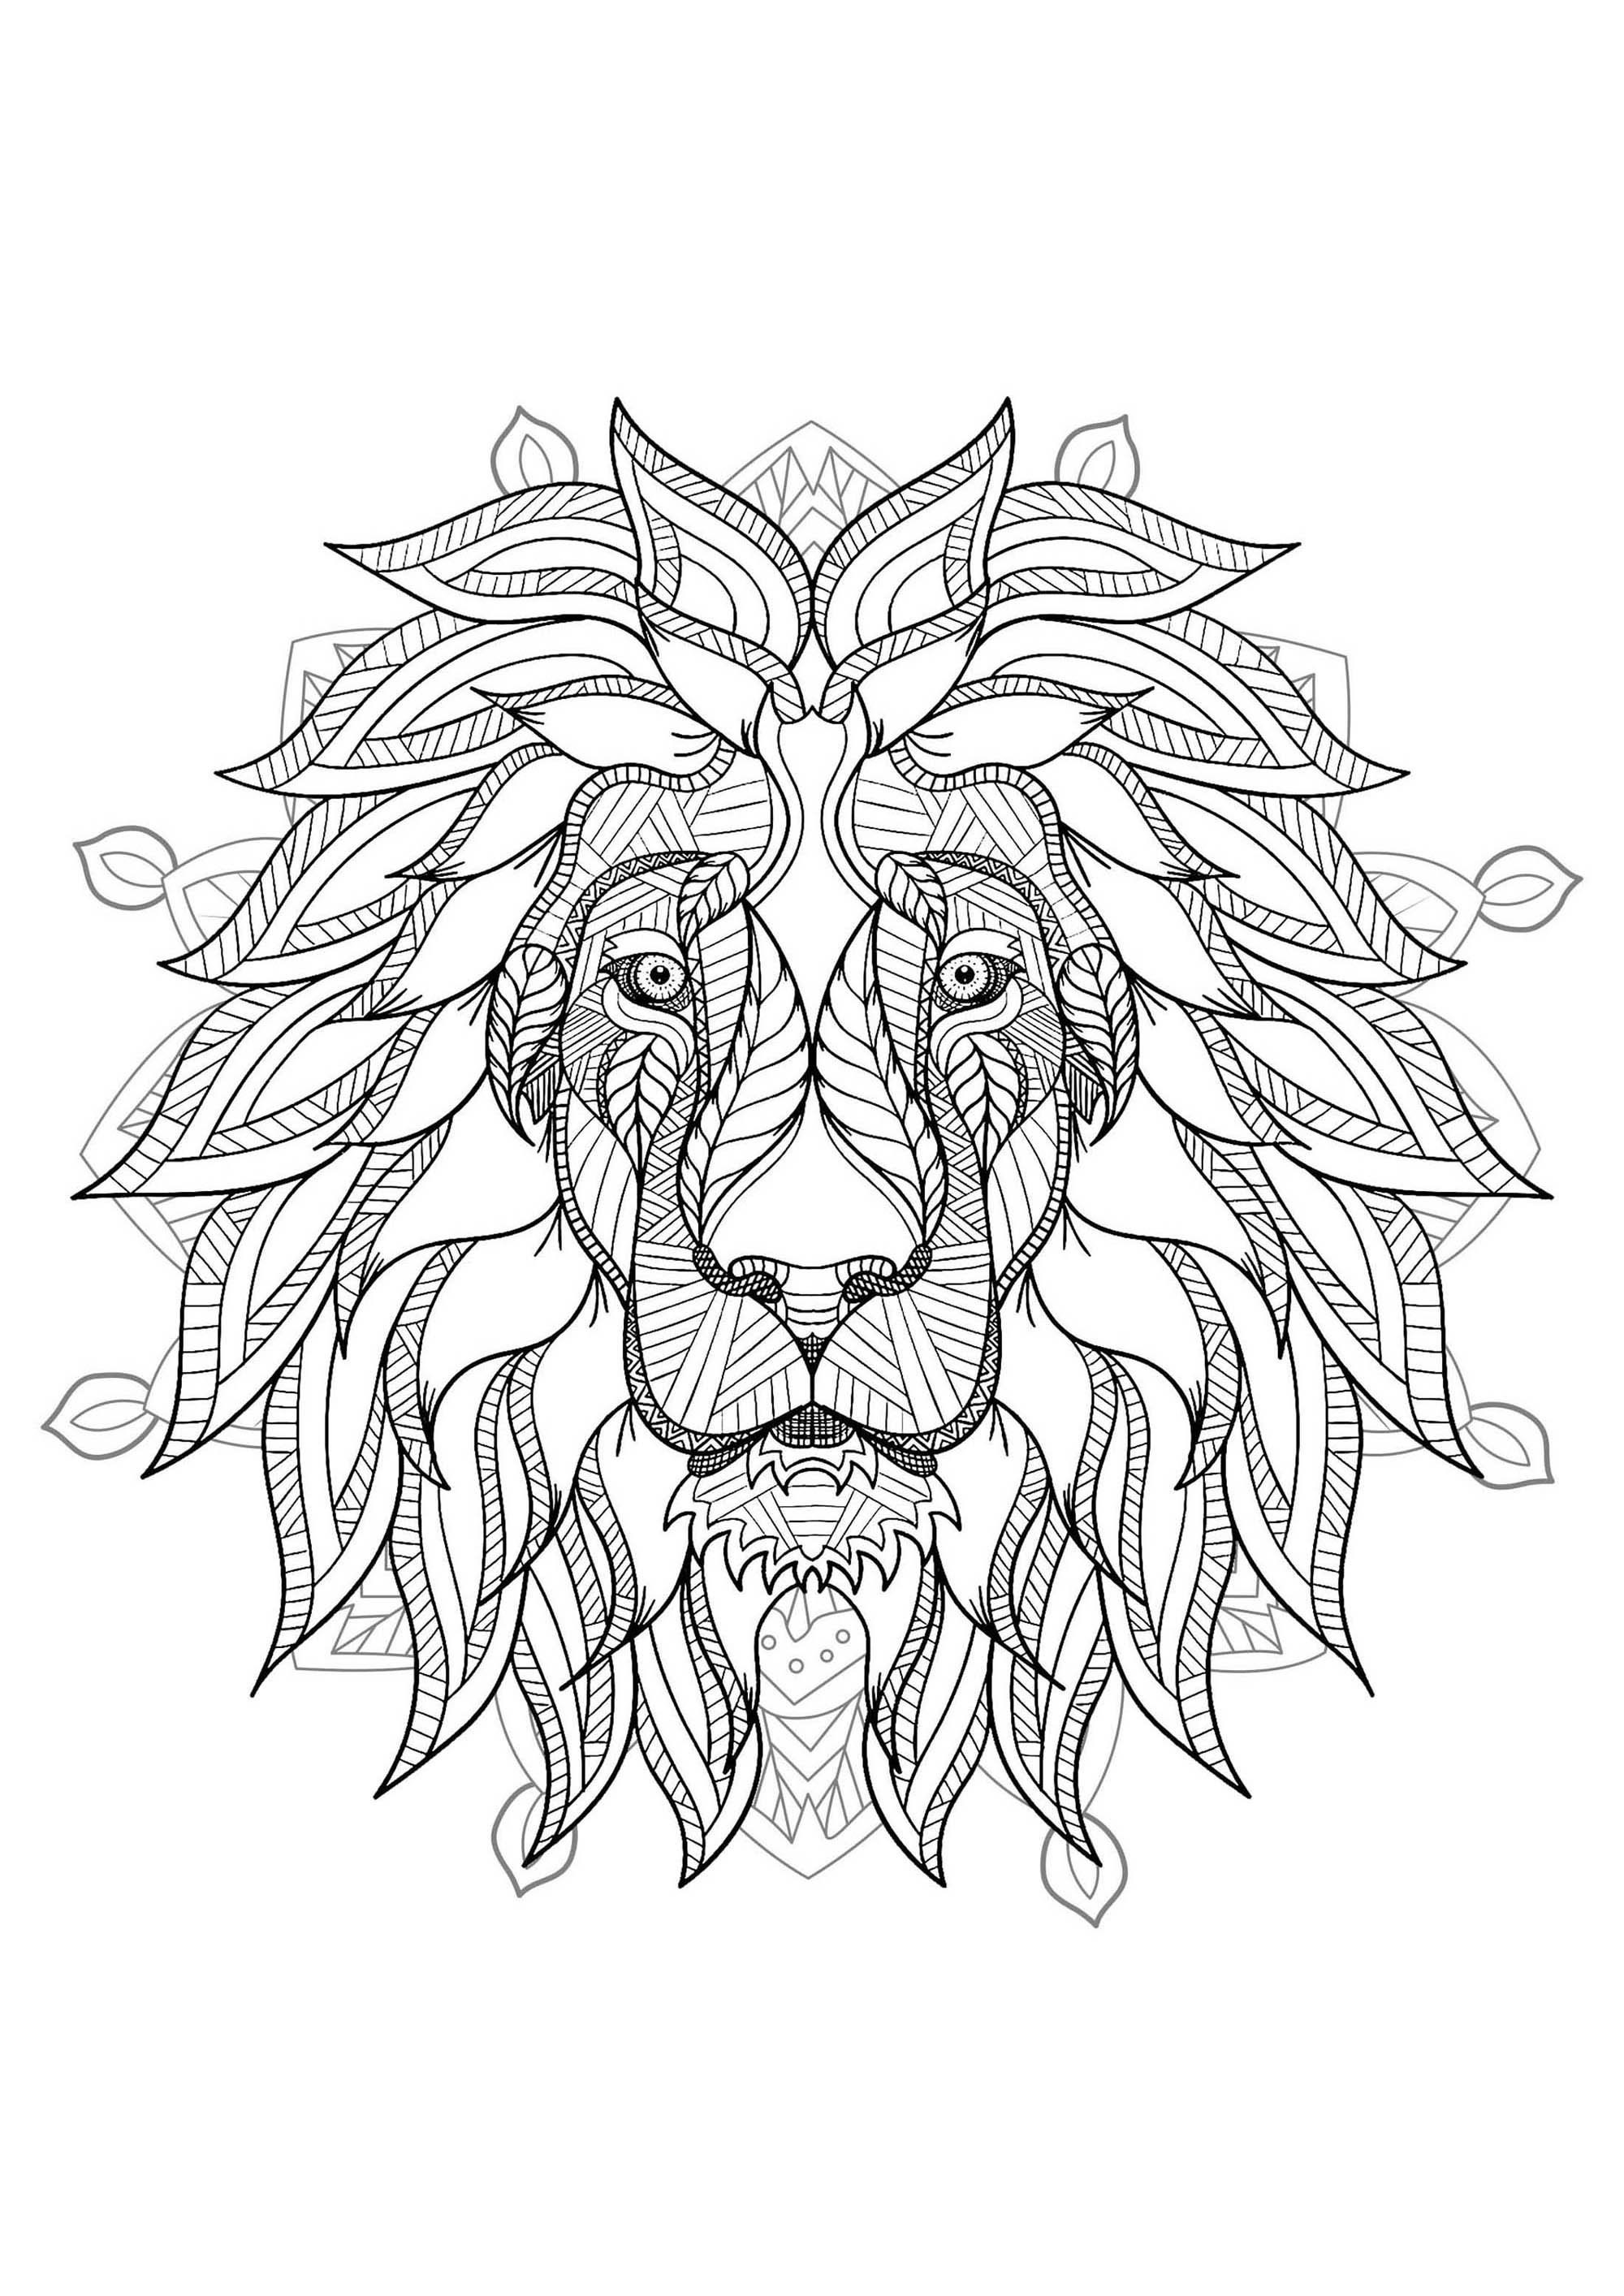 Löwenkopf-Mandala - 2. Du bist an der Reihe, den König der Tiere auf dieser schönen symmetrischen und detaillierten Ausmalvorlage auszumalen.